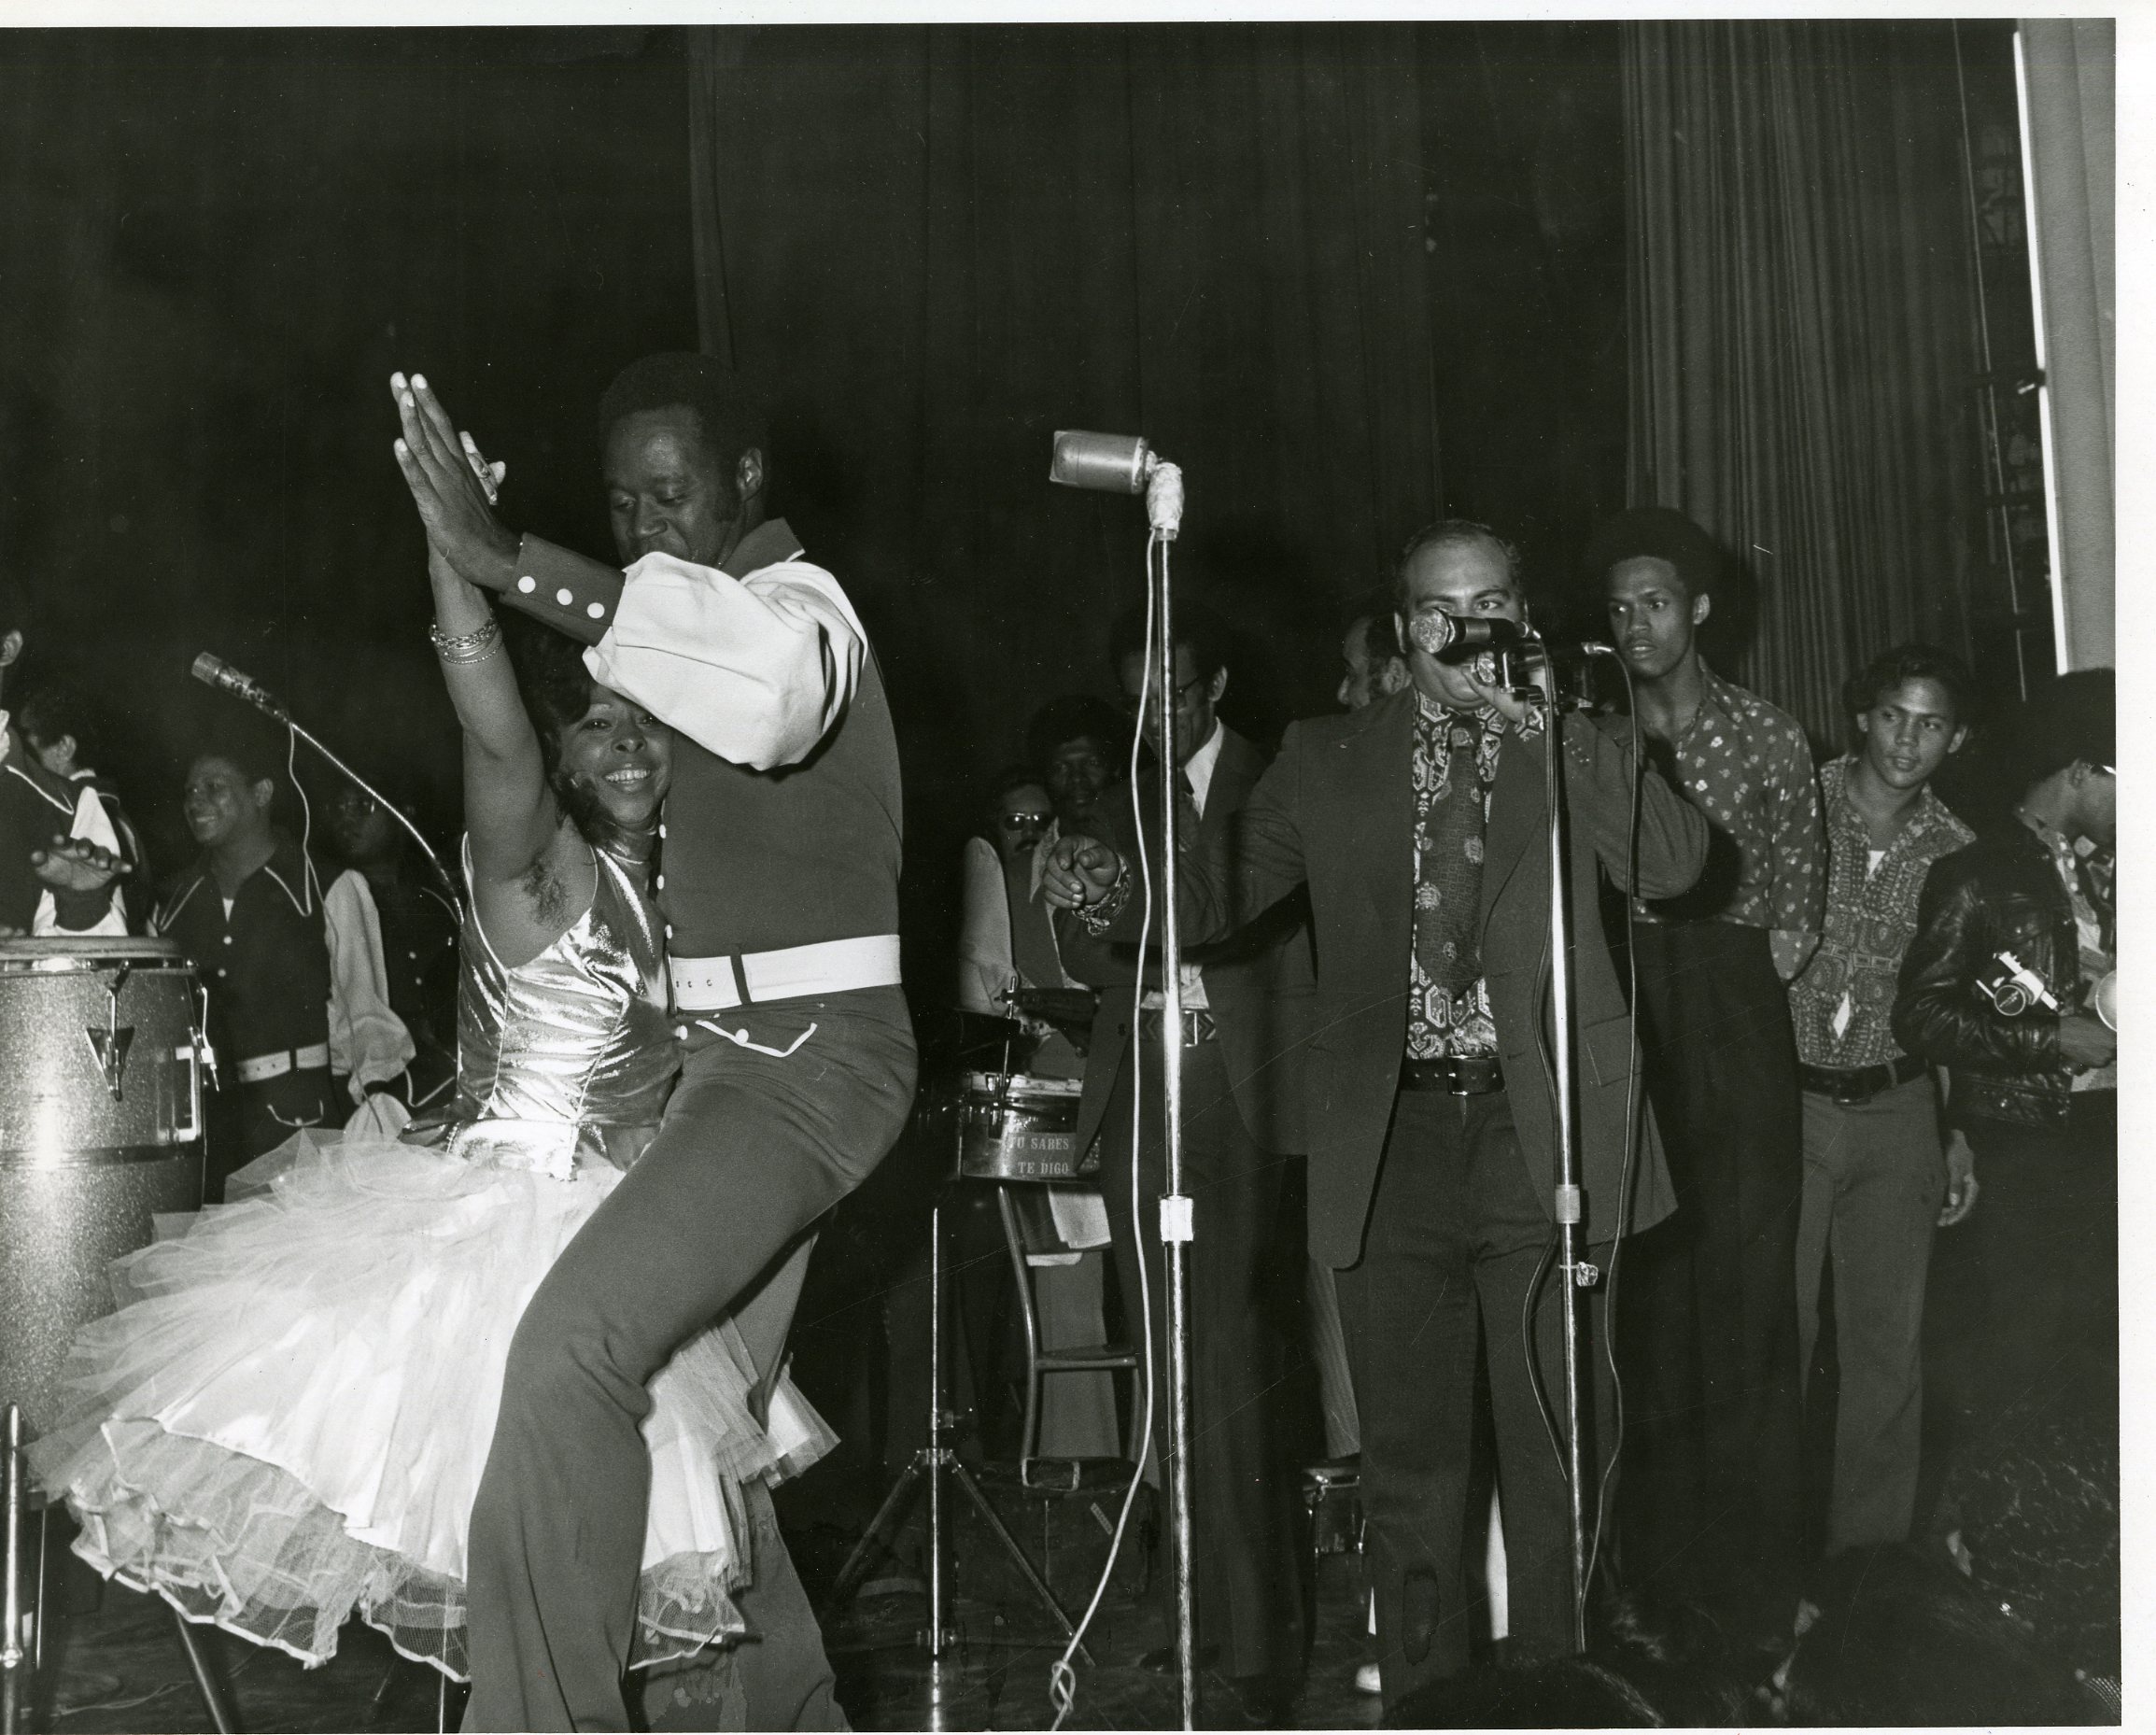 Johnny Ventura Dancing with Normandía Maldonado, September 21, 1973